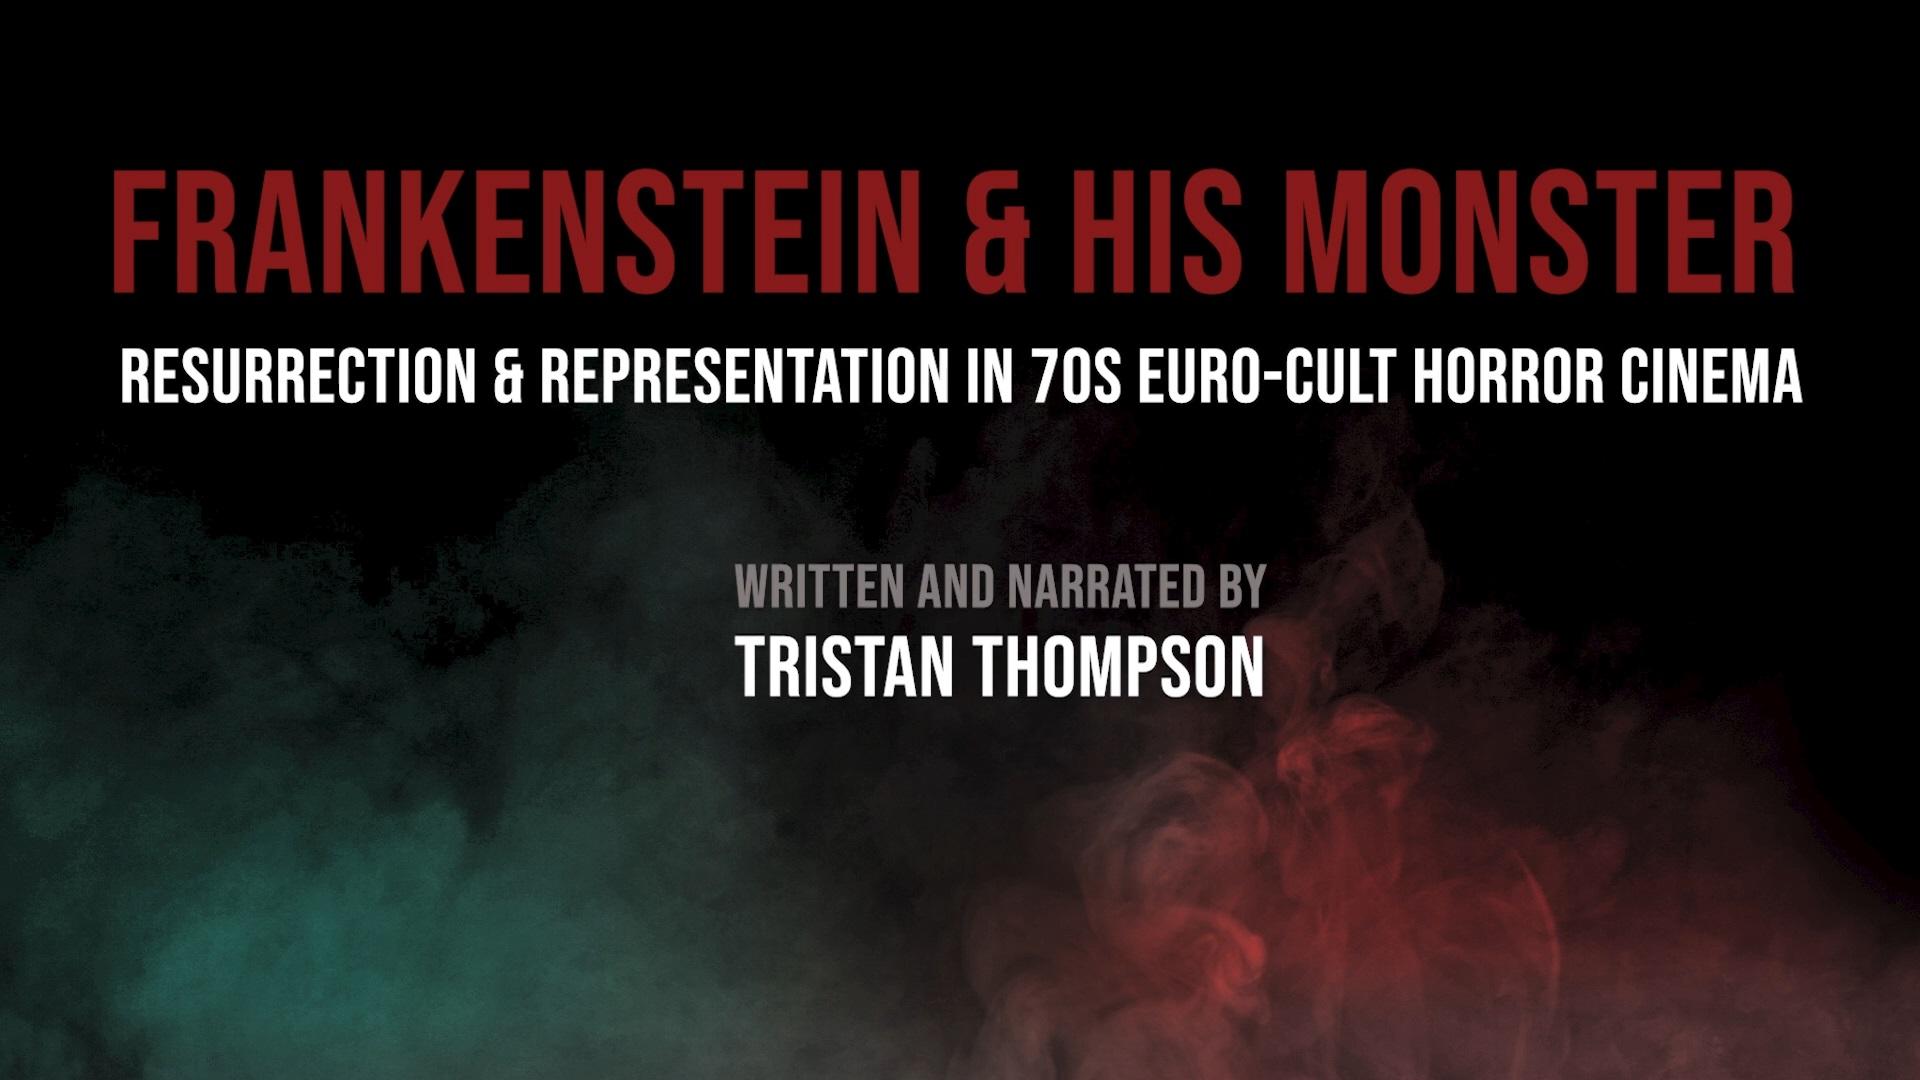 Frankenstein & His Monster in 70s Euro-Cult Horror Cinema